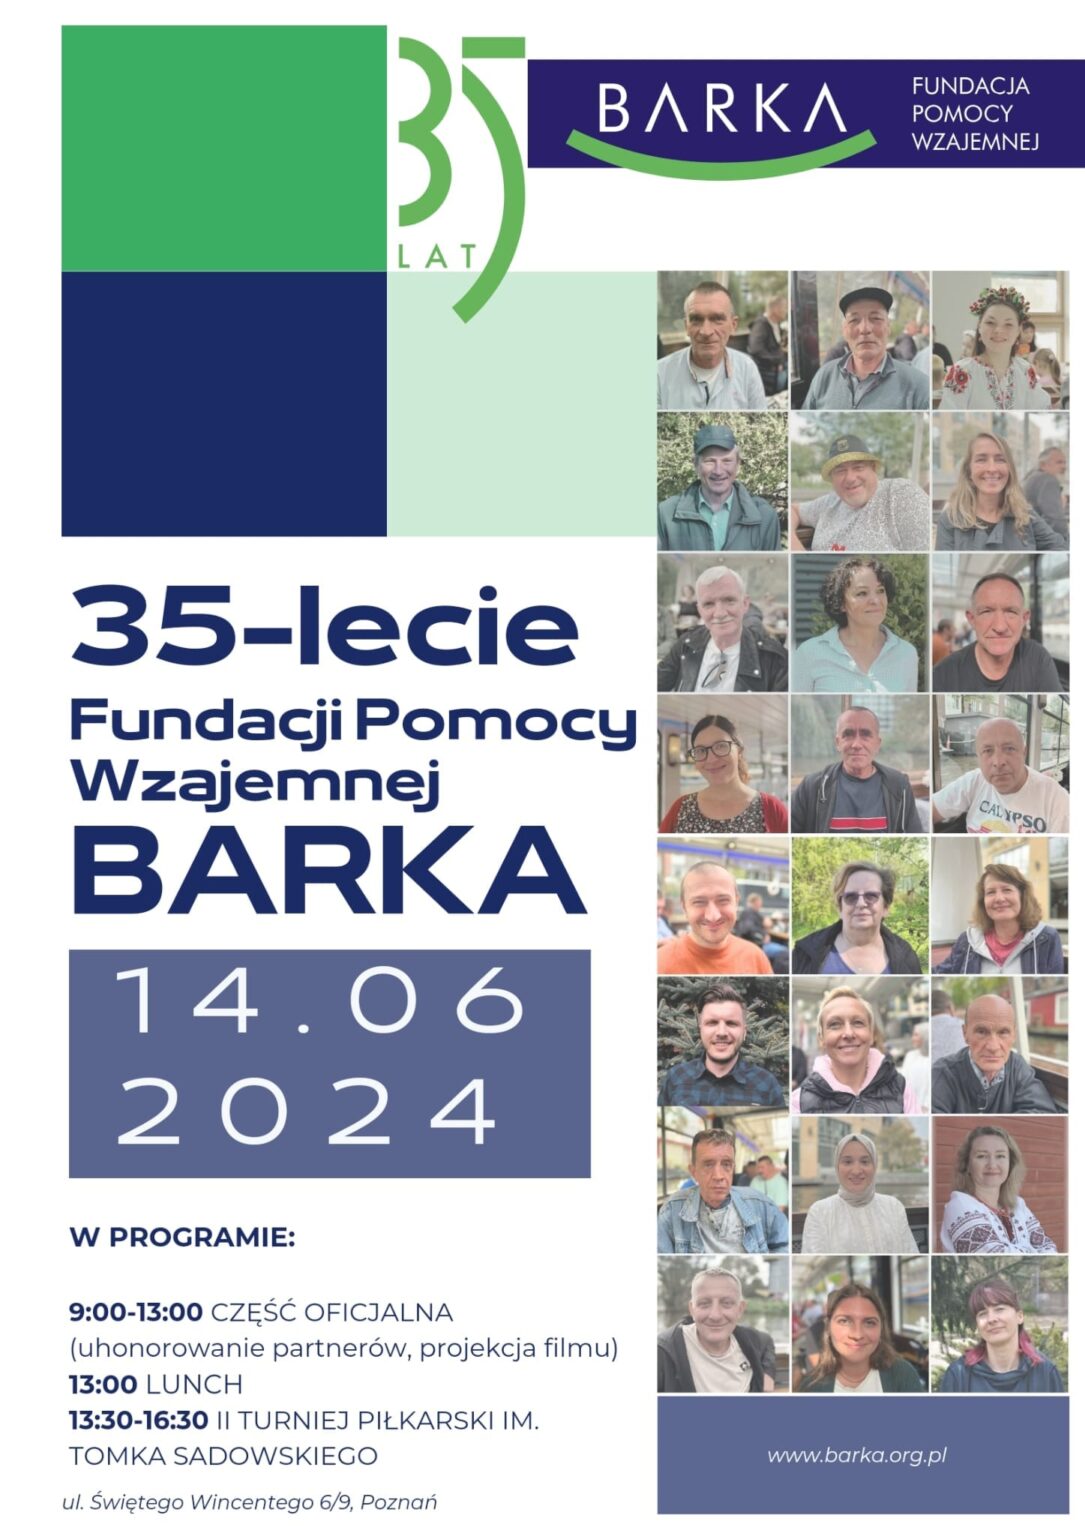 35-lecie Fundacji Barka